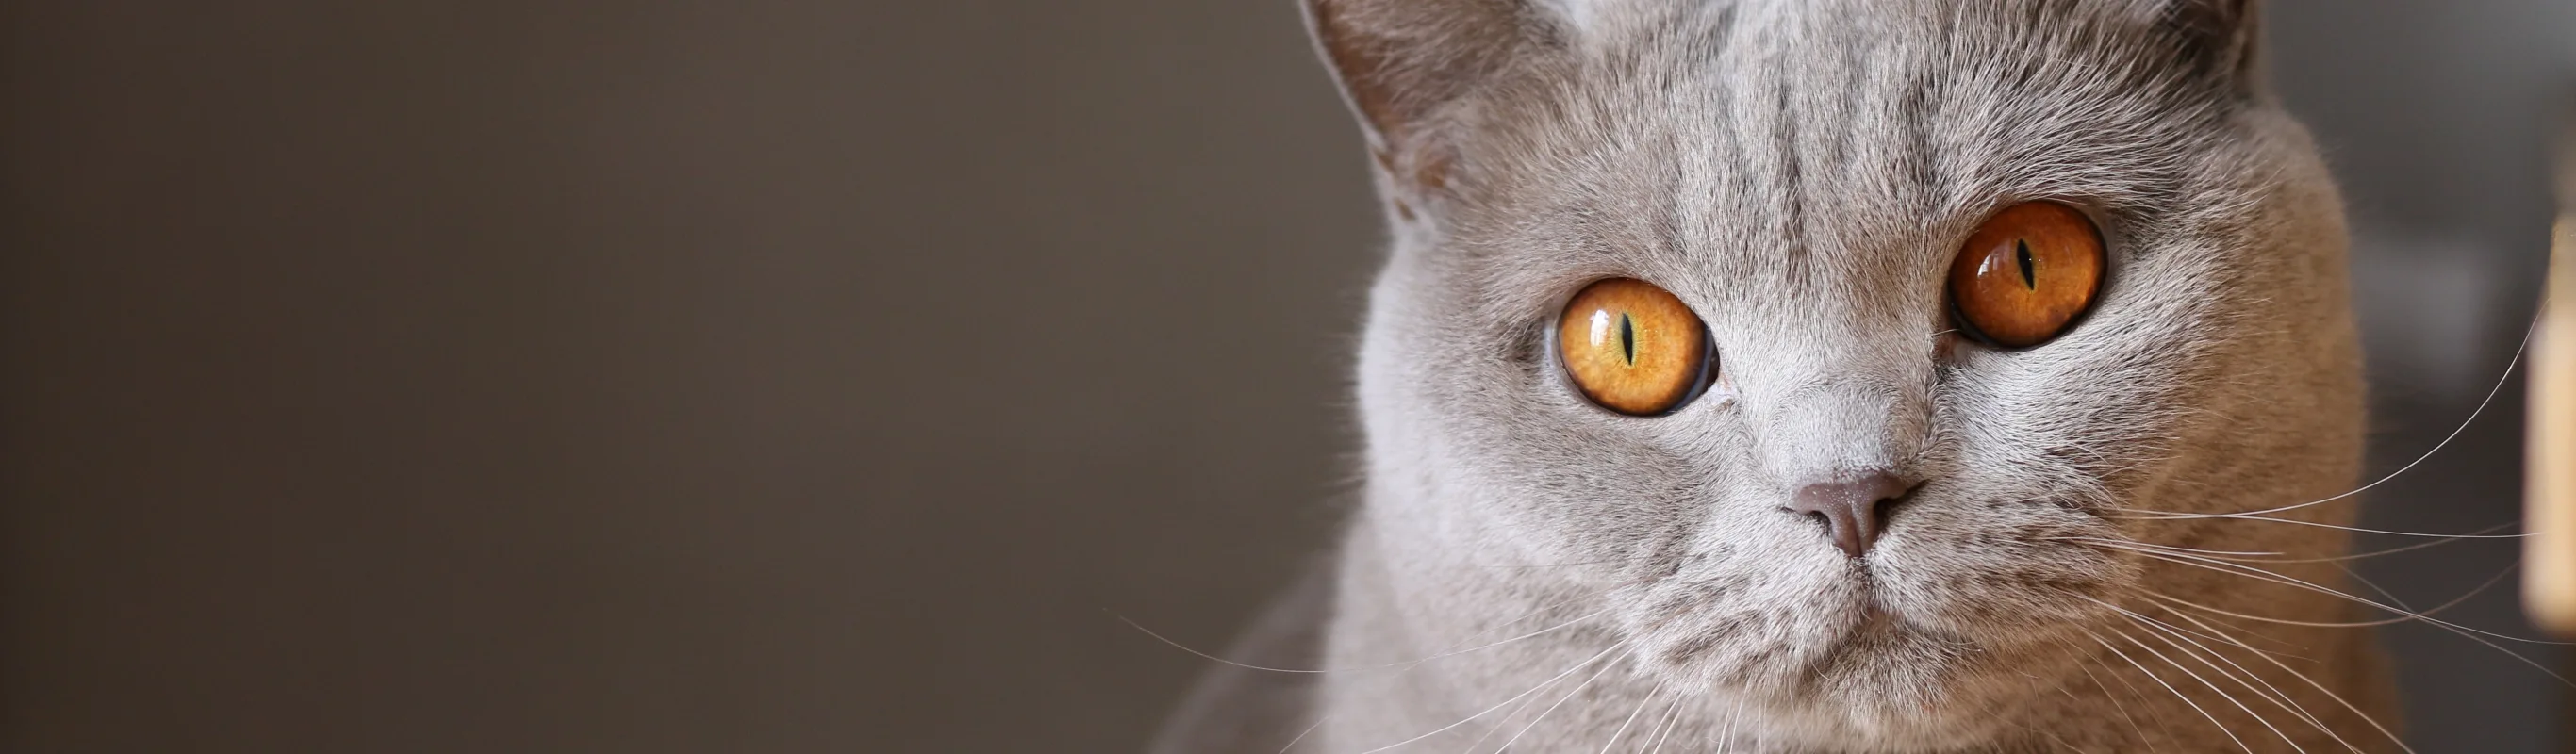 Cat with orange eyes